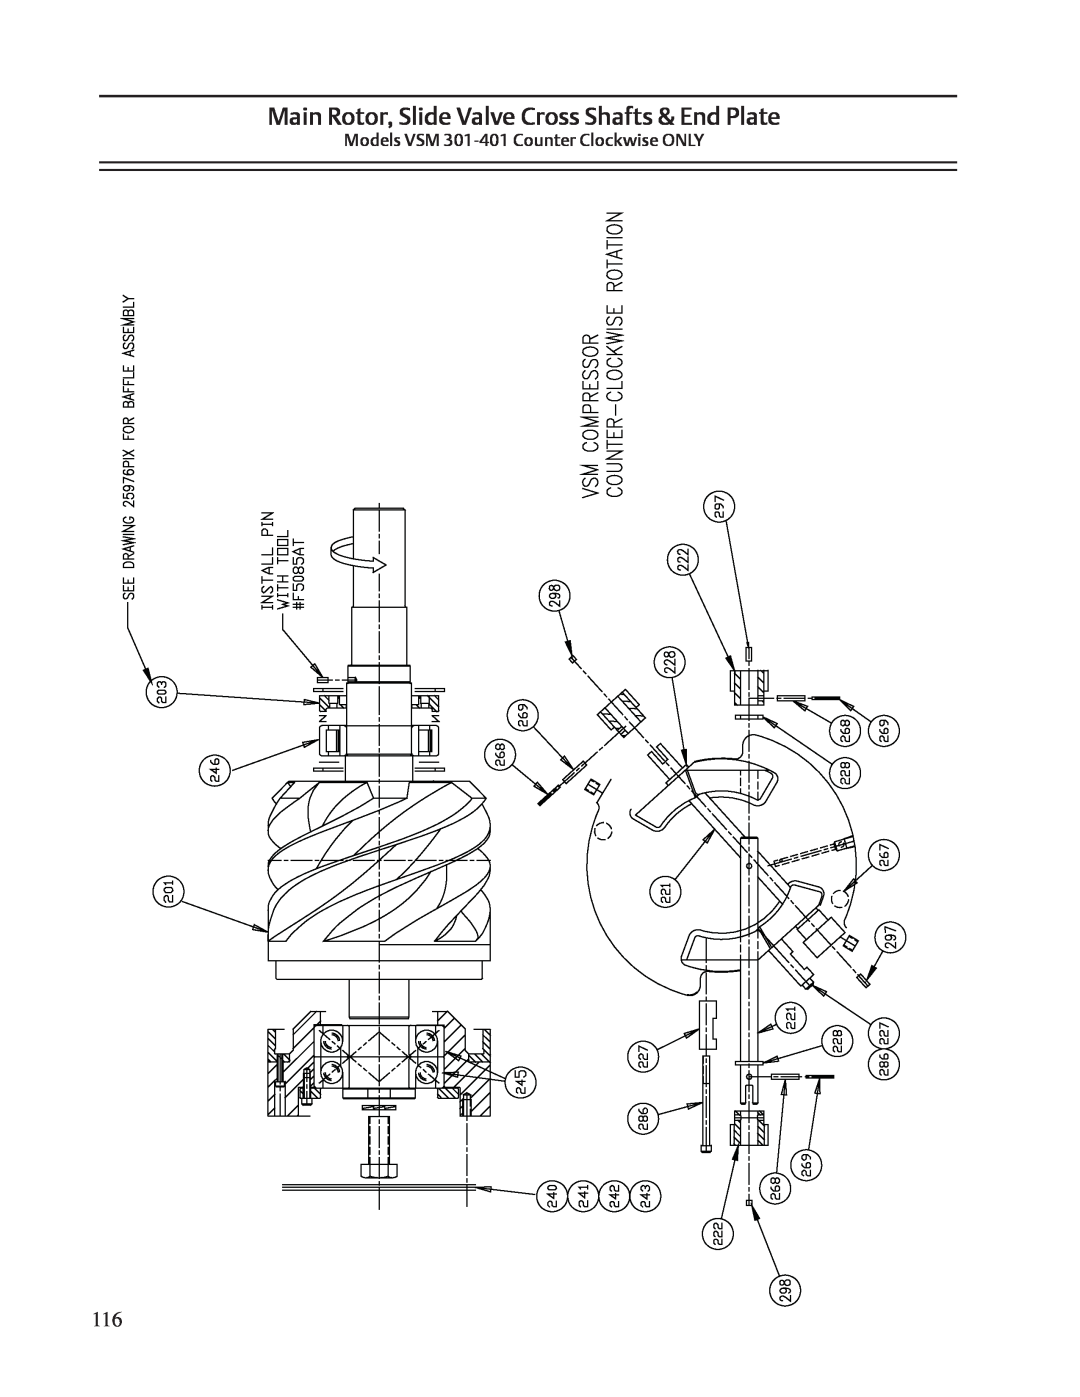 Emerson VSS, VSR service manual Main Rotor, Slide Valve Cross Shafts & End Plate, Models VSM 301-401 Counter Clockwise ONLY 